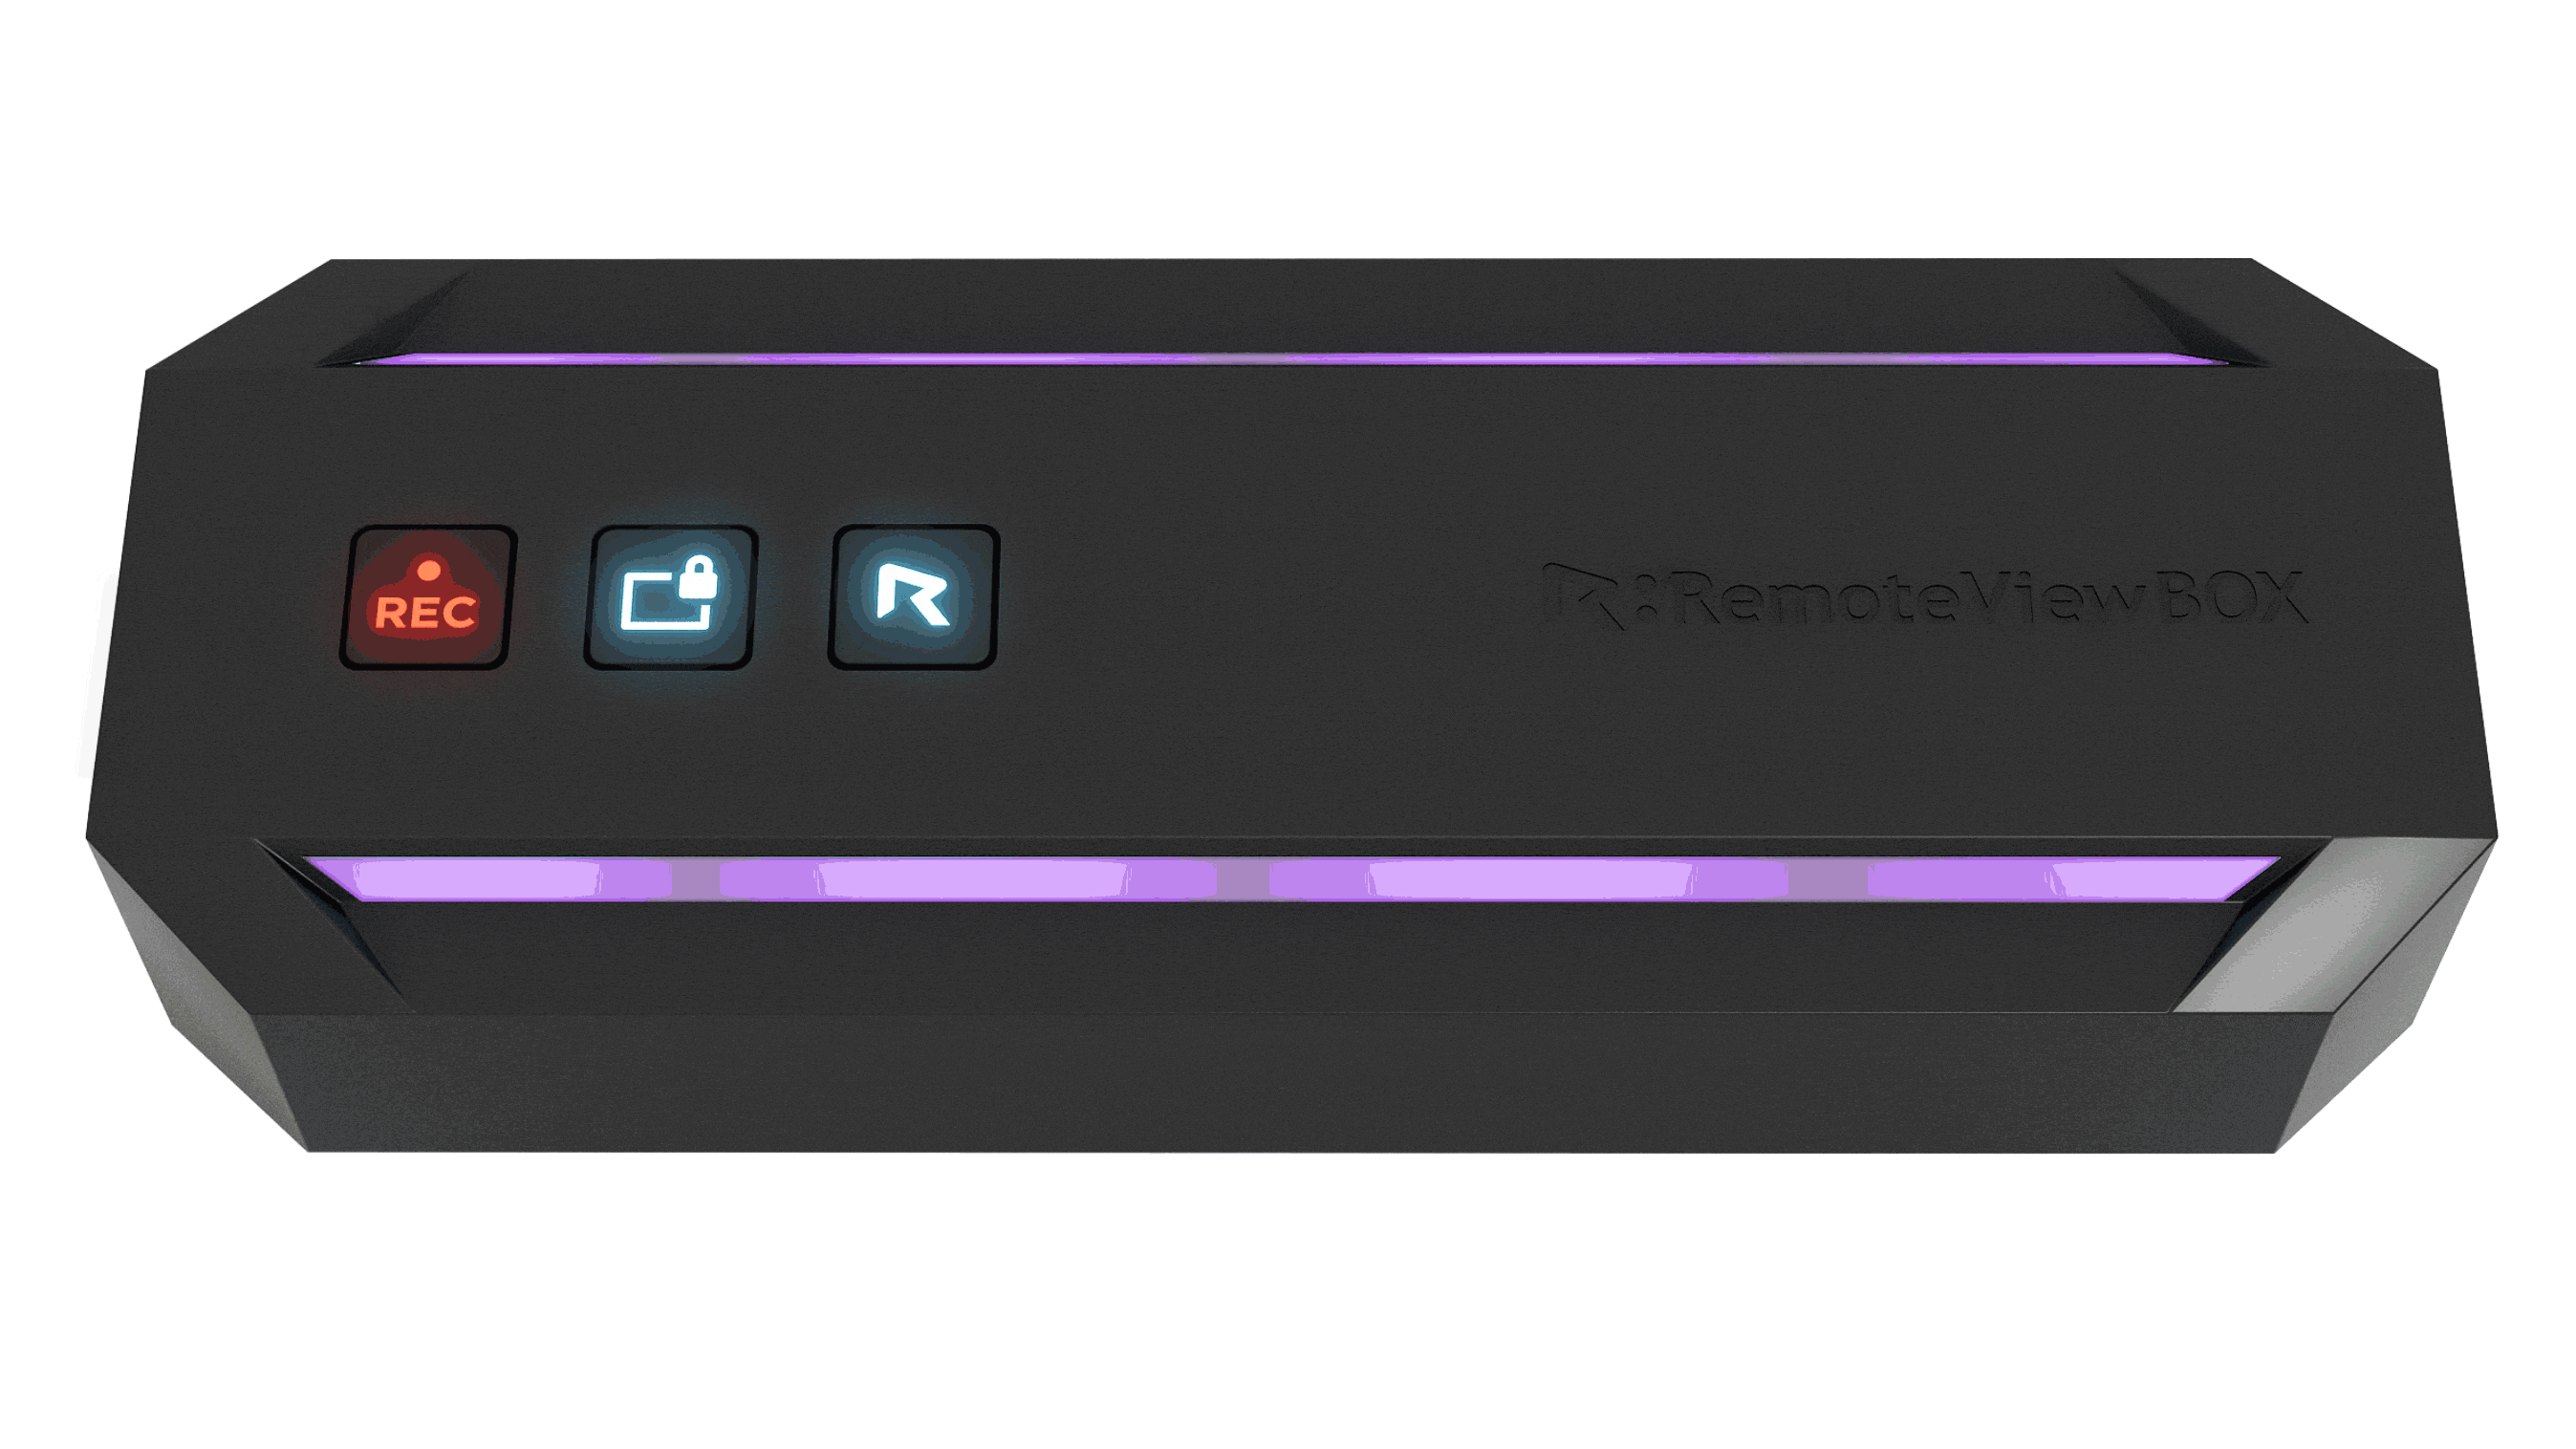 RemoteView BOXにUSBを挿した後、IPアドレス設定が完了されたら、機器のLEDライトに紫色が3回点滅した後、オレンジ色に変わります。 